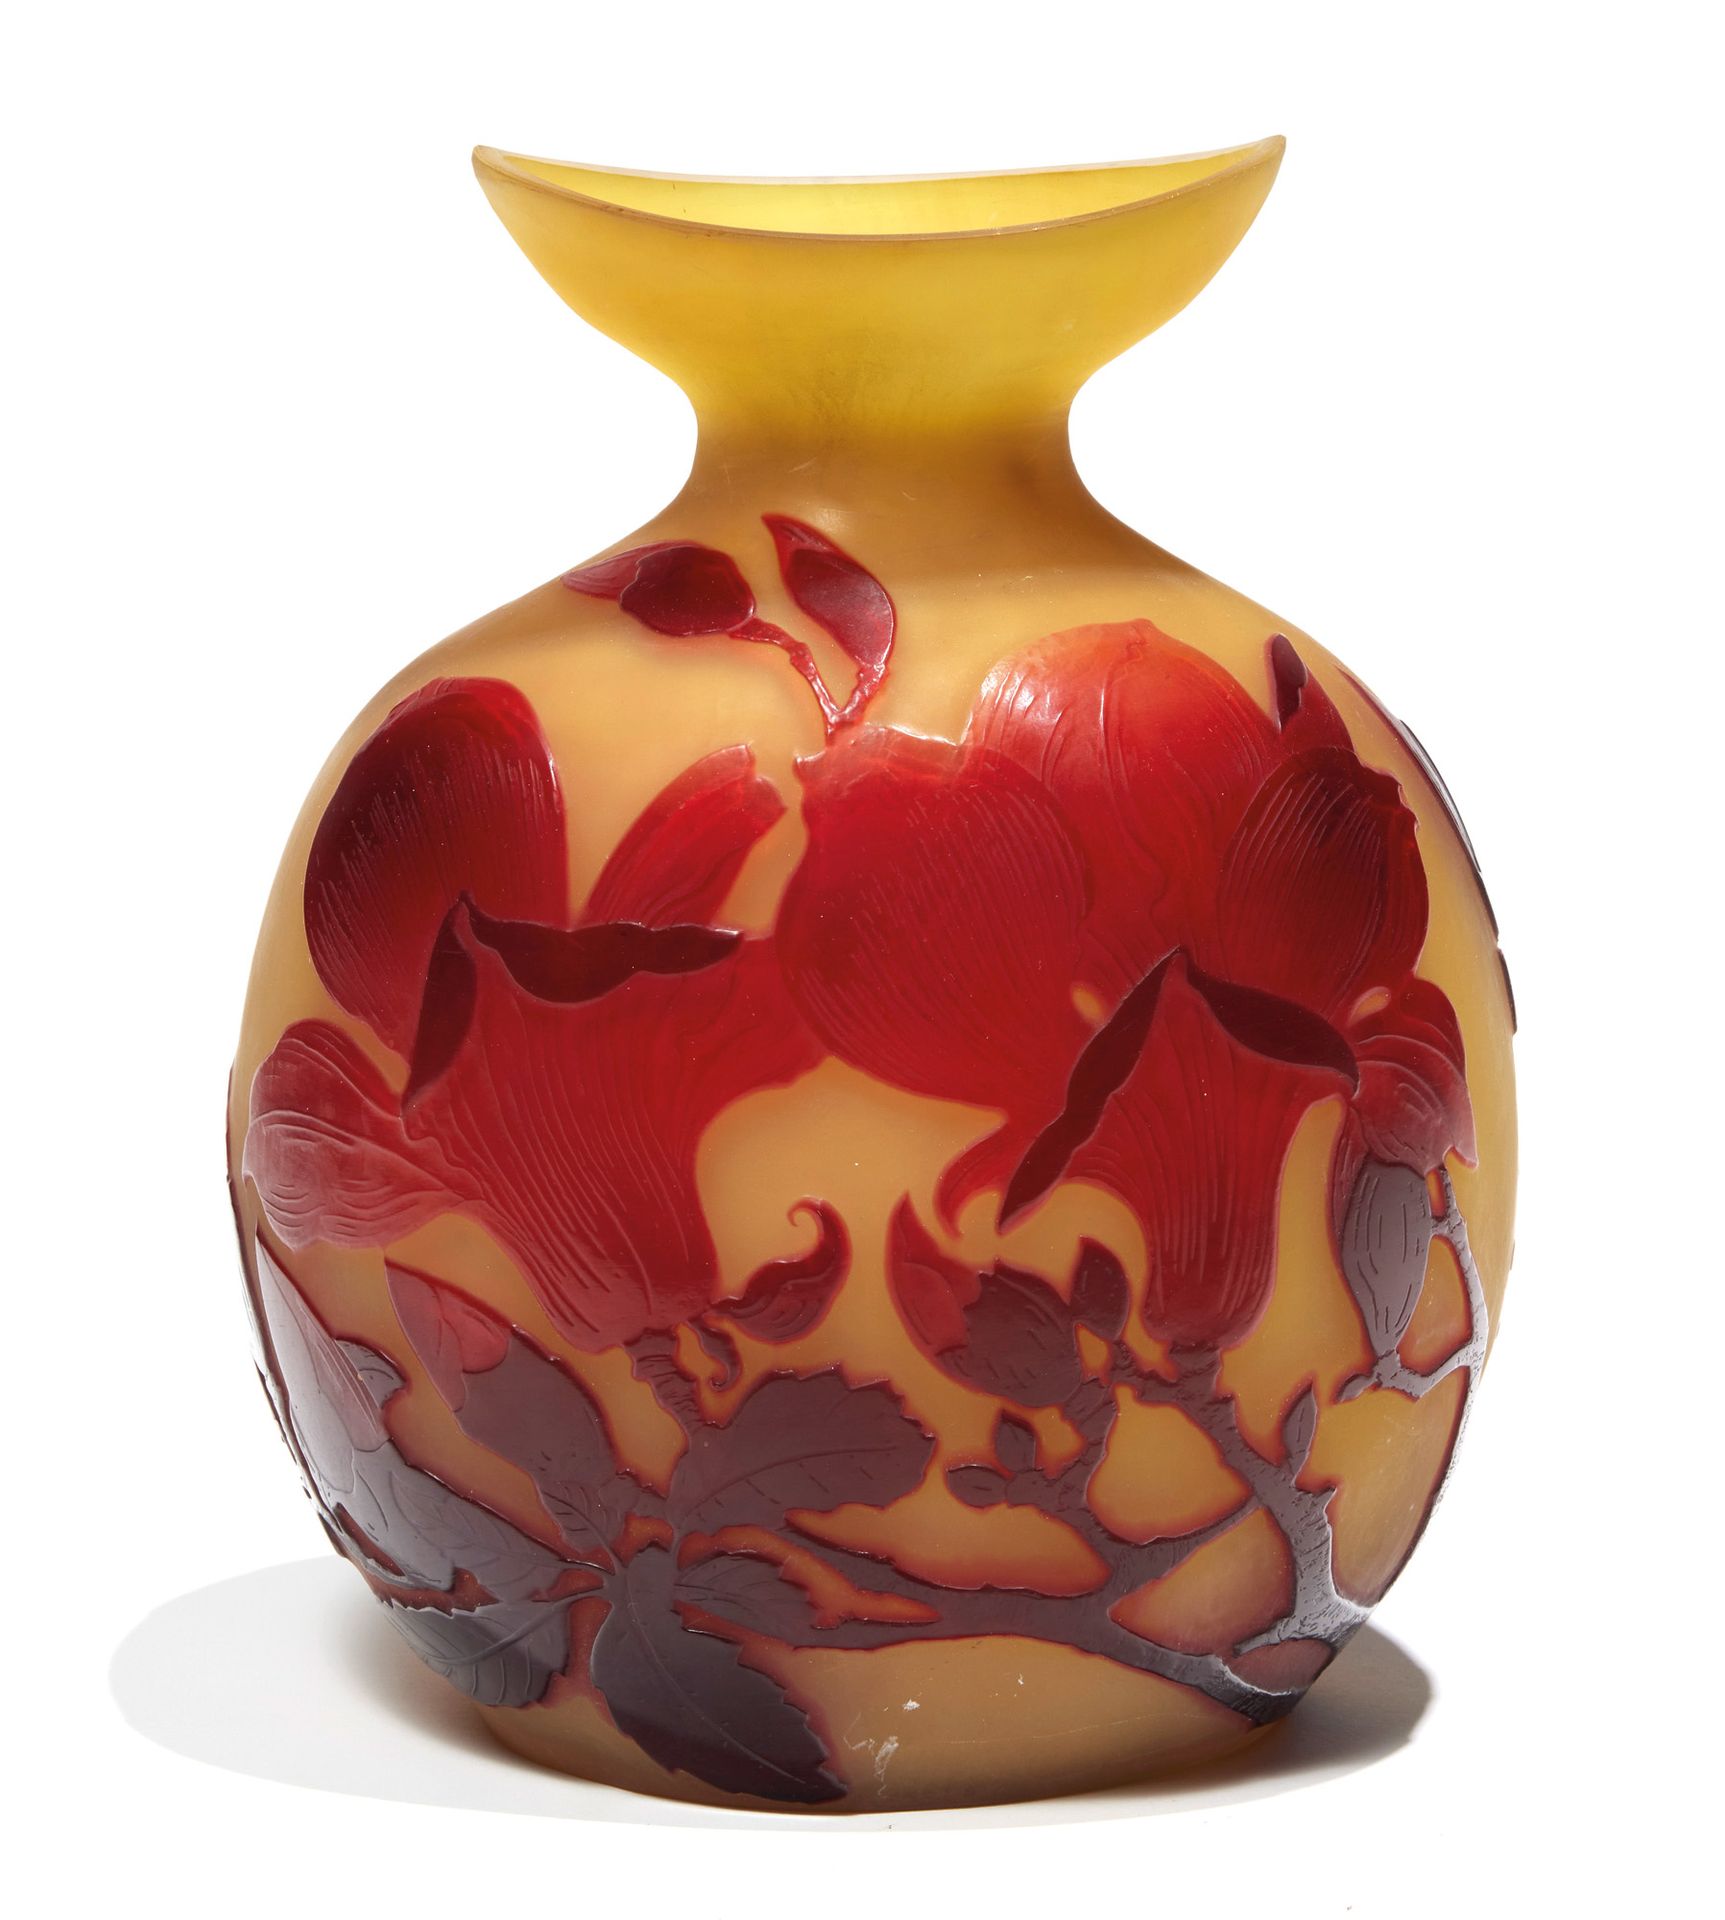 ÉTABLISSEMENTS GALLÉ GALLÉ-EINRICHTUNGEN

Vase aus mehrschichtigem Glas mit Tulp&hellip;